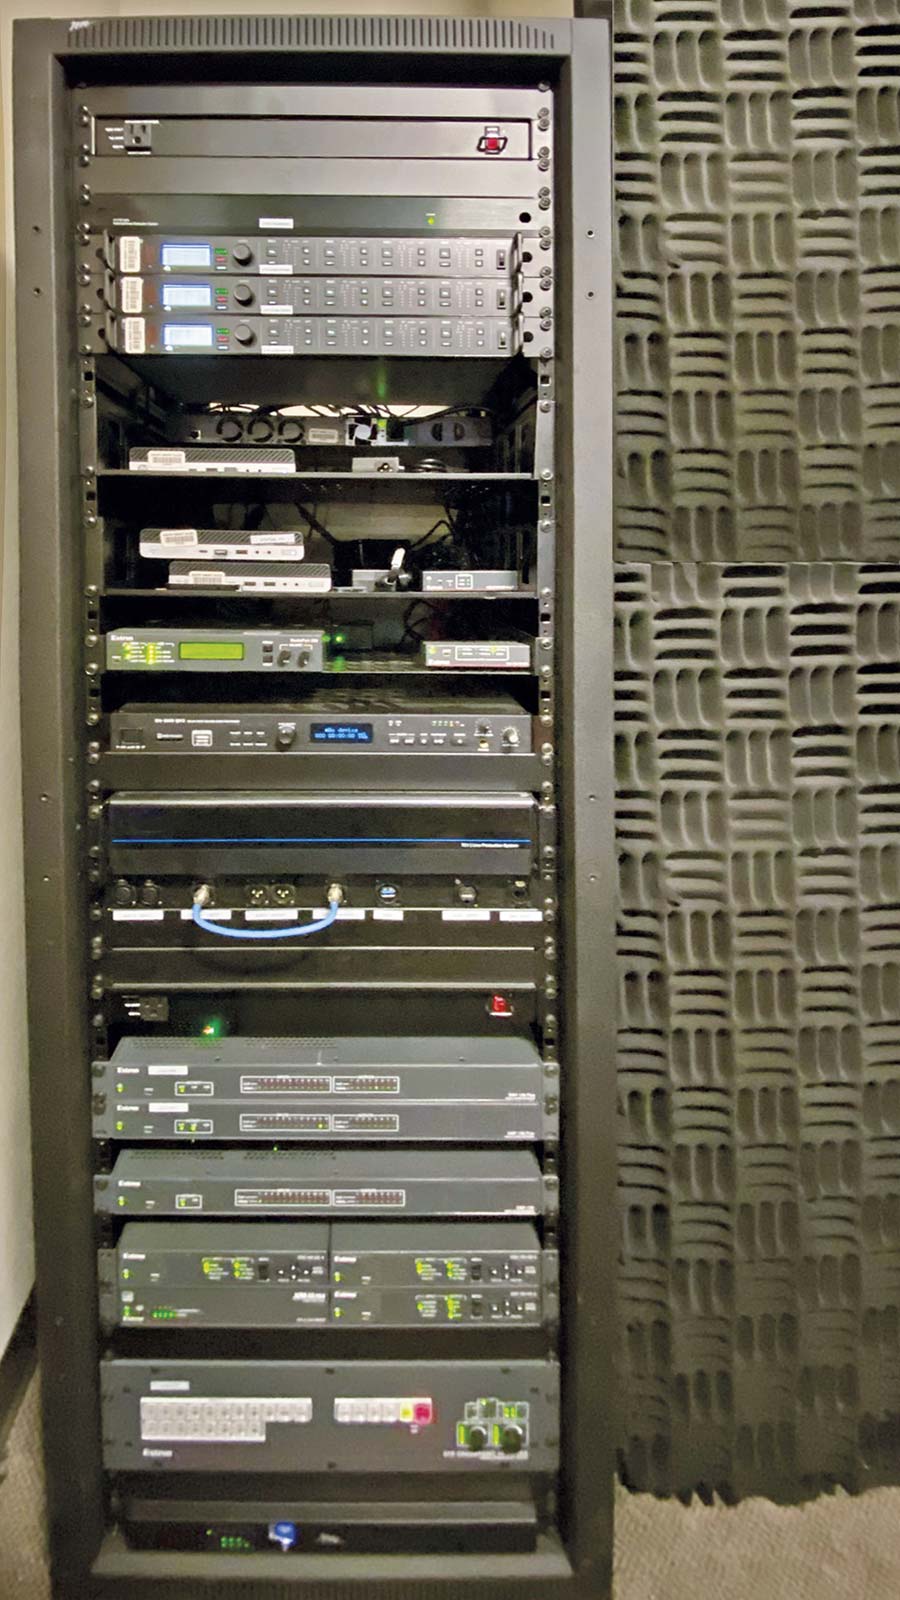 视音频系统设备如：DTP CrossPoint 108 4K IPCP MA 70 矩阵切换器和 3 台 DMP 128 音频处理器等均采用机柜安装，被统一放置在控制间内